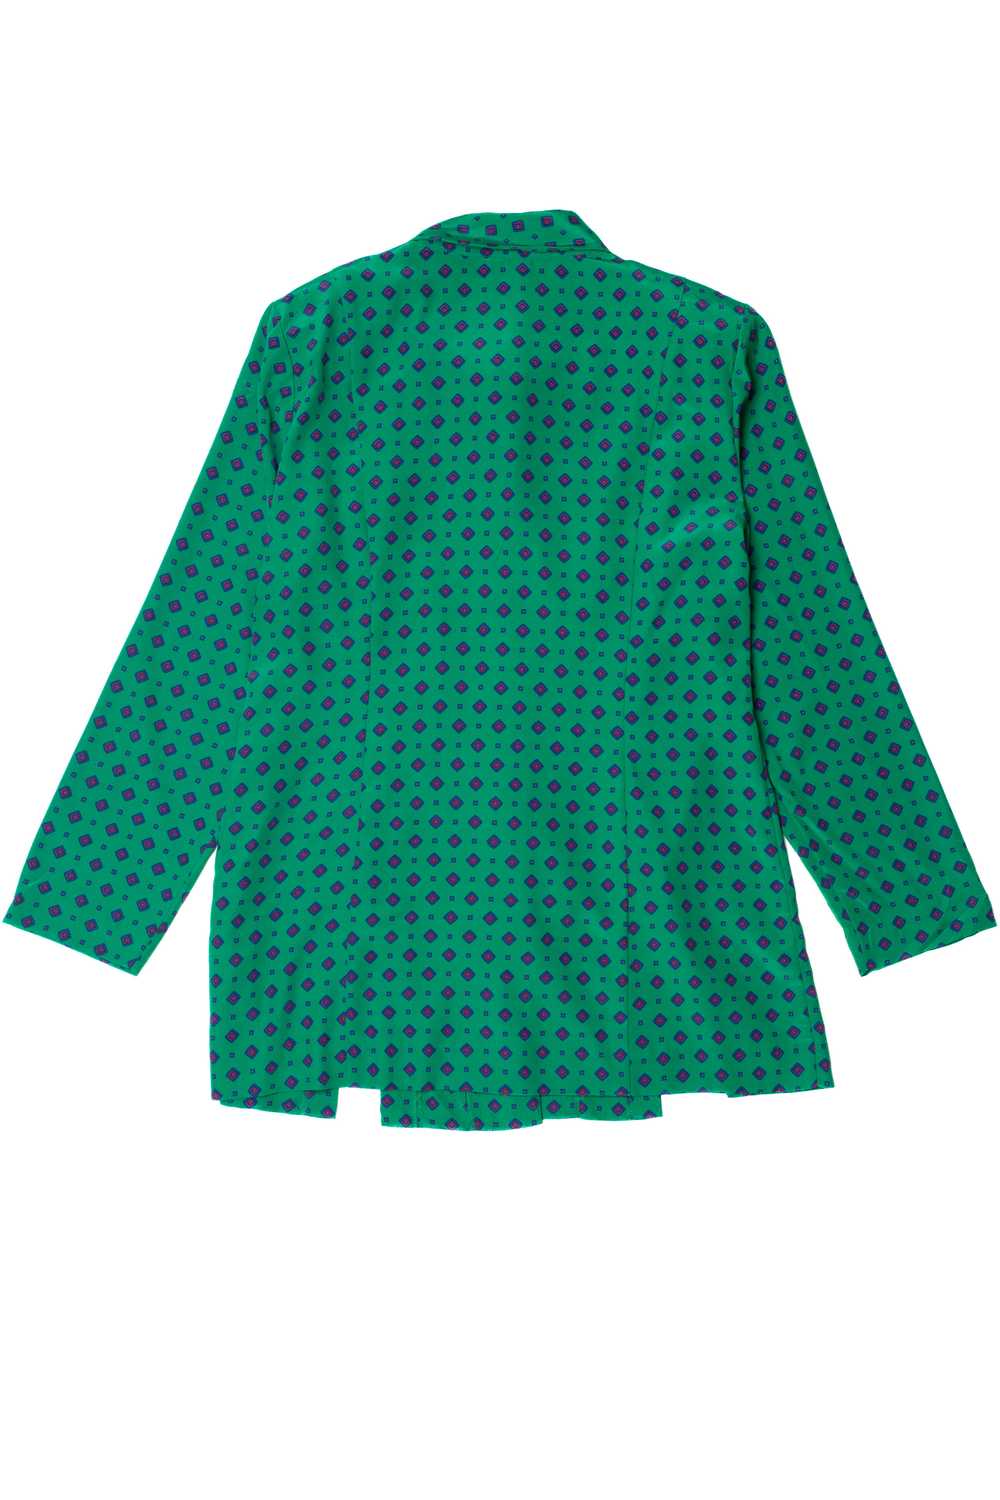 Vintage Leslie Fay Long Shirt Dress - image 3